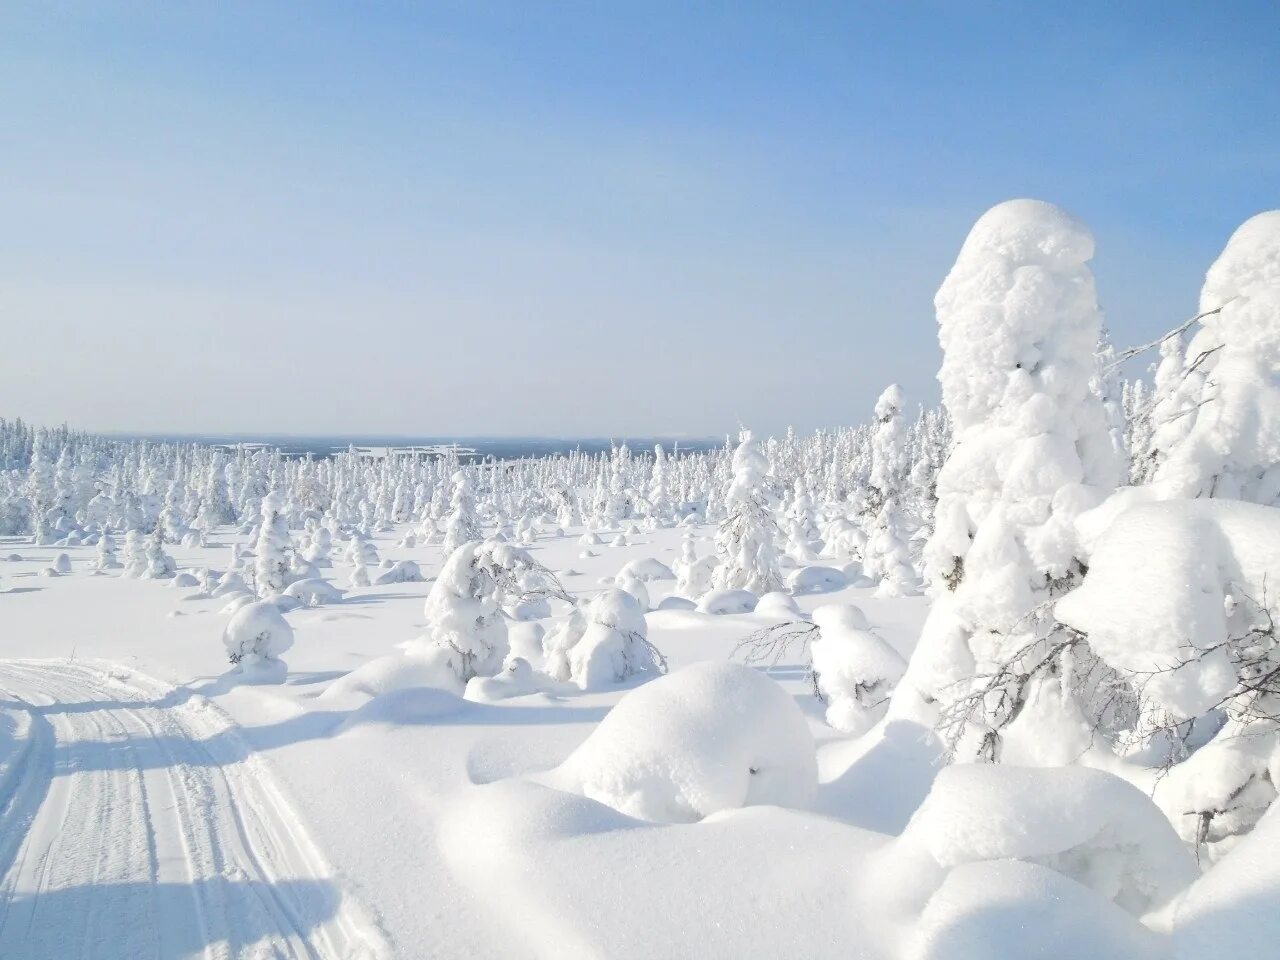 В каких городах россии теплые зимы. Национальный парк Паанаярви зимой. Парк Паанаярви Карелия зимой. Карелия понаярови зима. Снежная Карелия.